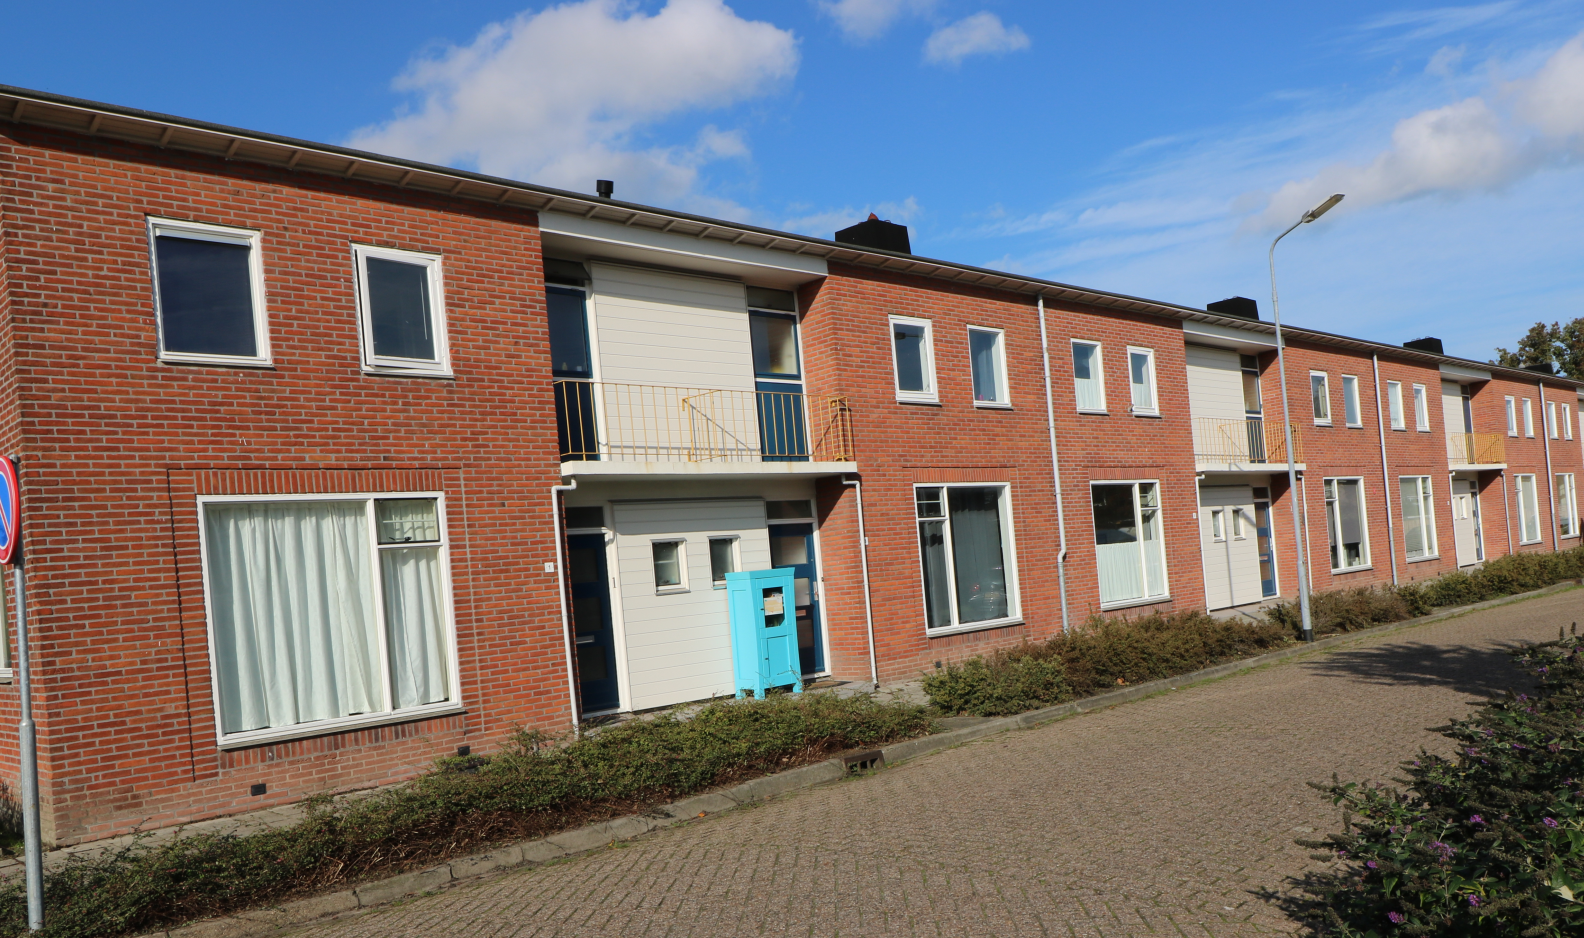 Irenestraat 1, 4388 KV Oost-Souburg, Nederland